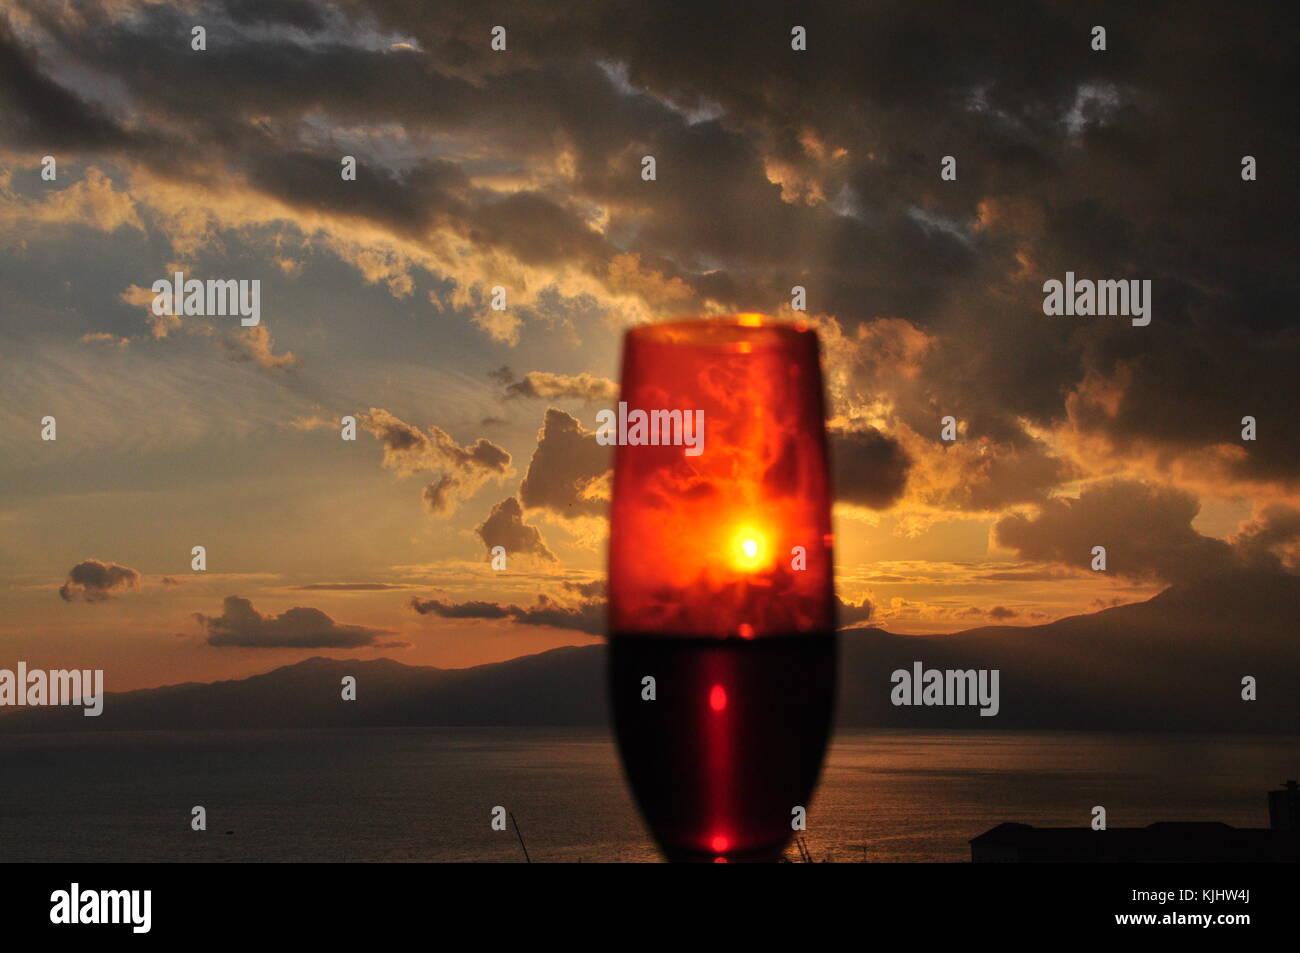 Presso l'odore di un autunno fantasy giorno è accaduto a me per vedere un tramonto meraviglioso attraverso una goccia di vino nel mio bicchiere Foto Stock